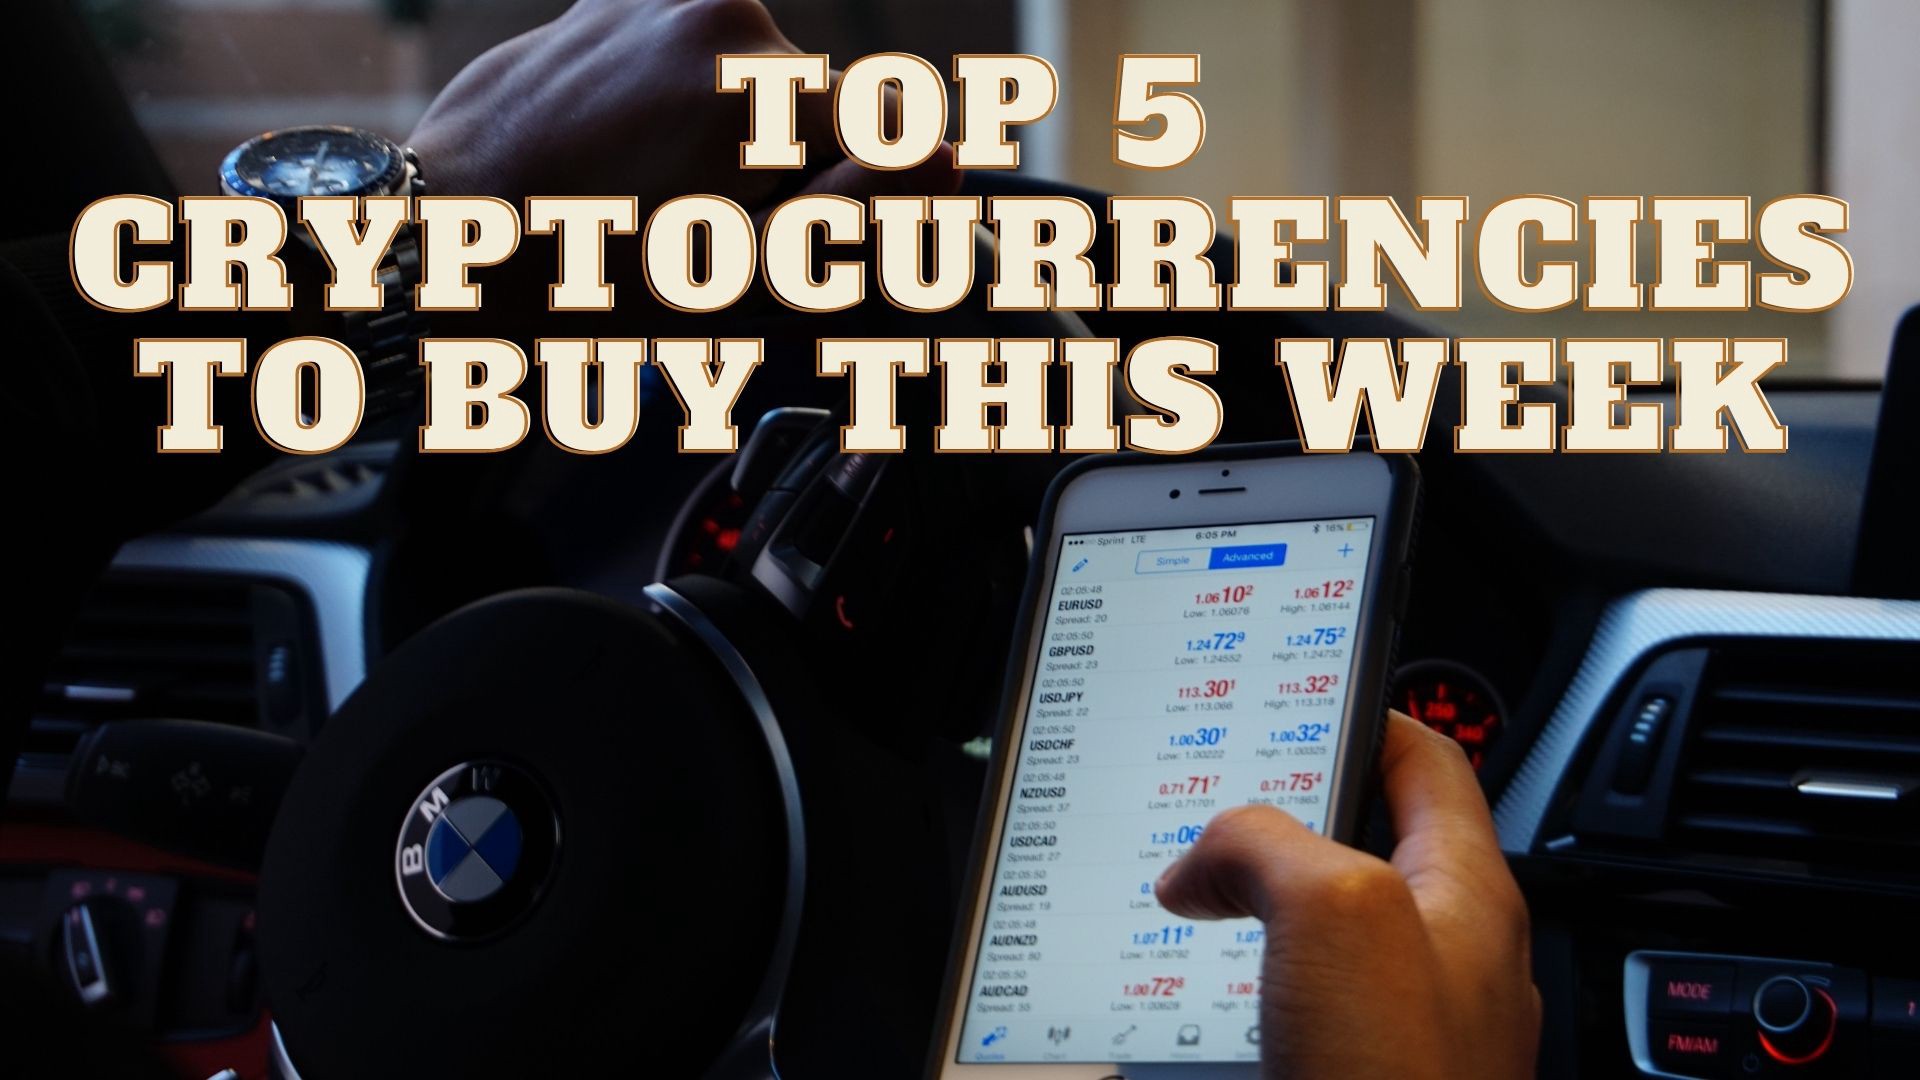 Top 5 Cryptocurrencies to Buy this Week